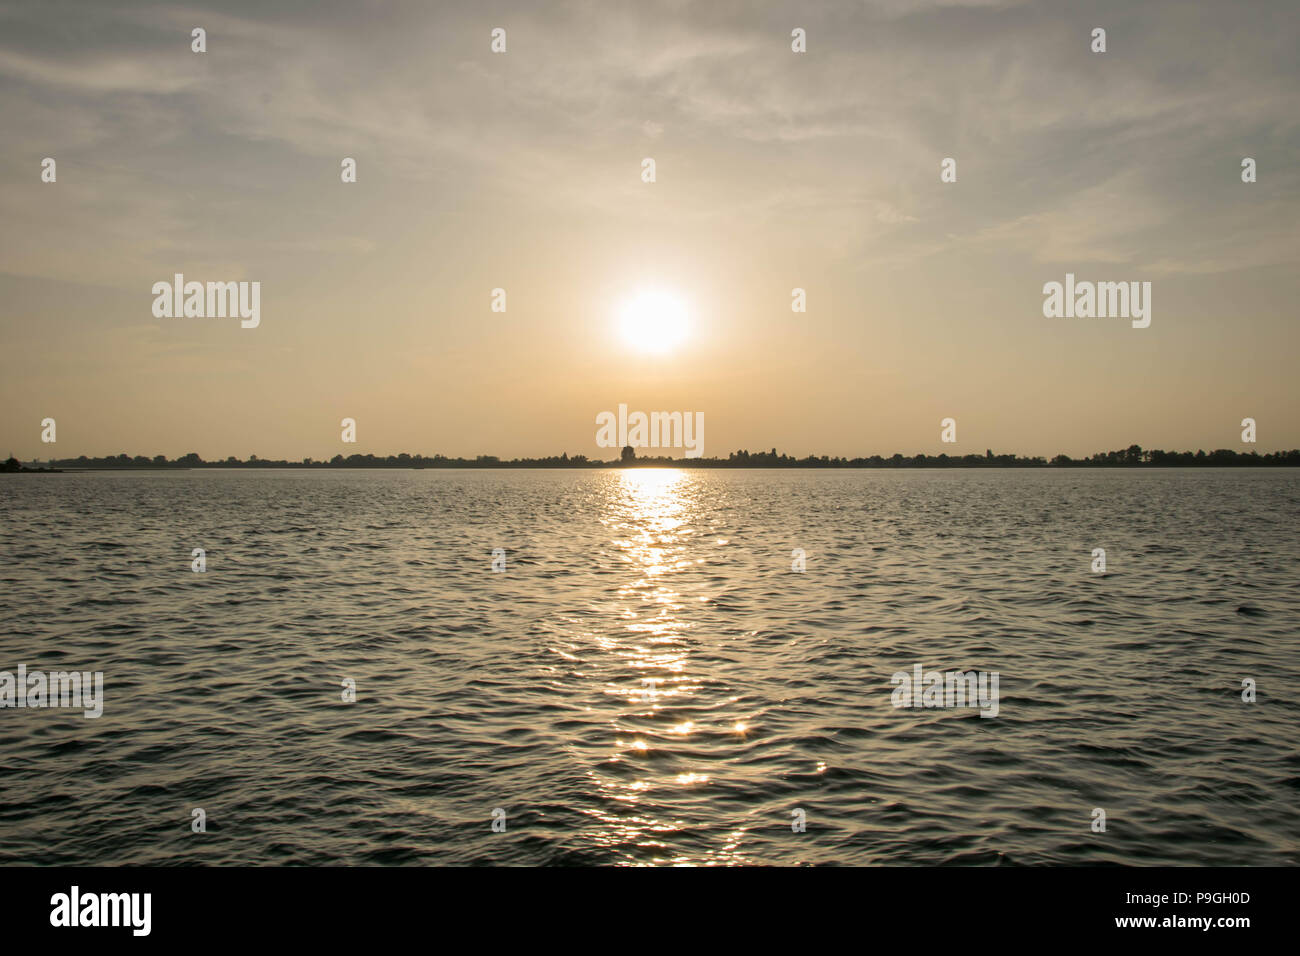 L'Europa, Italia, Veneto, Venezia. Suggestivo tramonto sulla laguna di Venezia (laguna di Venezia) visto dal vaporetto (acqua) tram voce Punta Sabbioni. Foto Stock